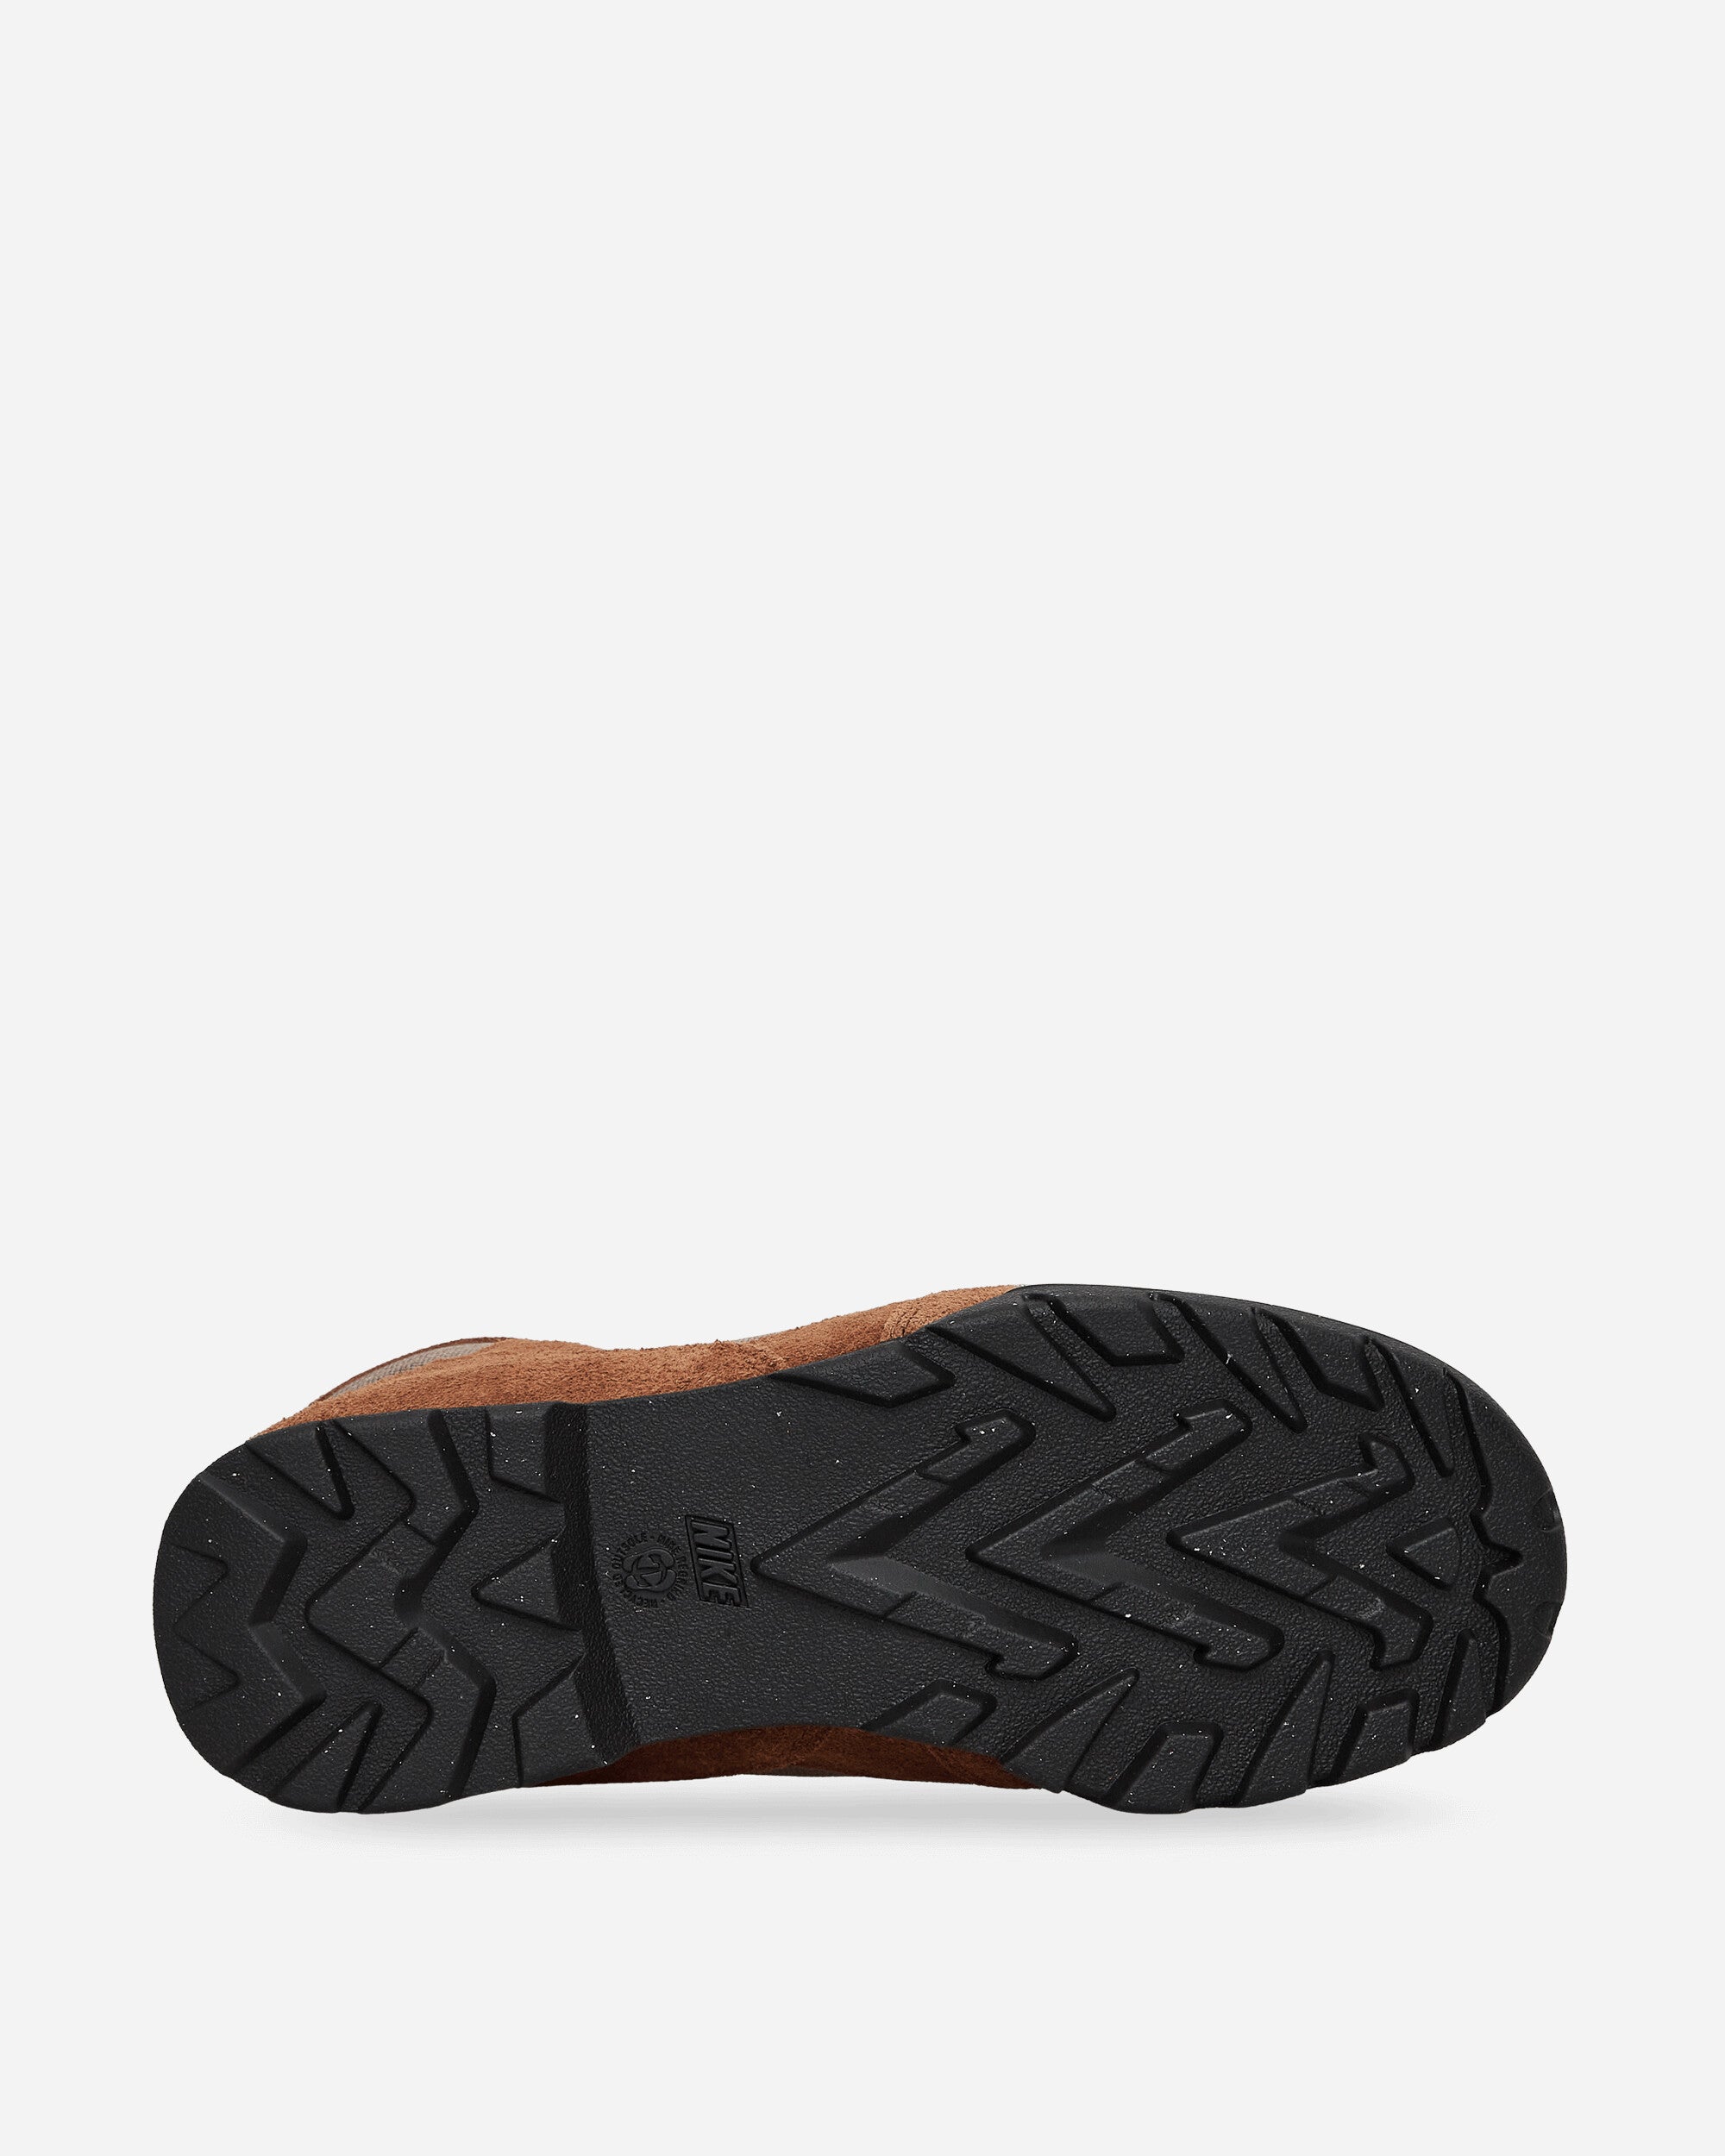 Nike Acg Torre Mid Wp Pecan/Black/Olive Grey Sneakers Mid FD0212-200